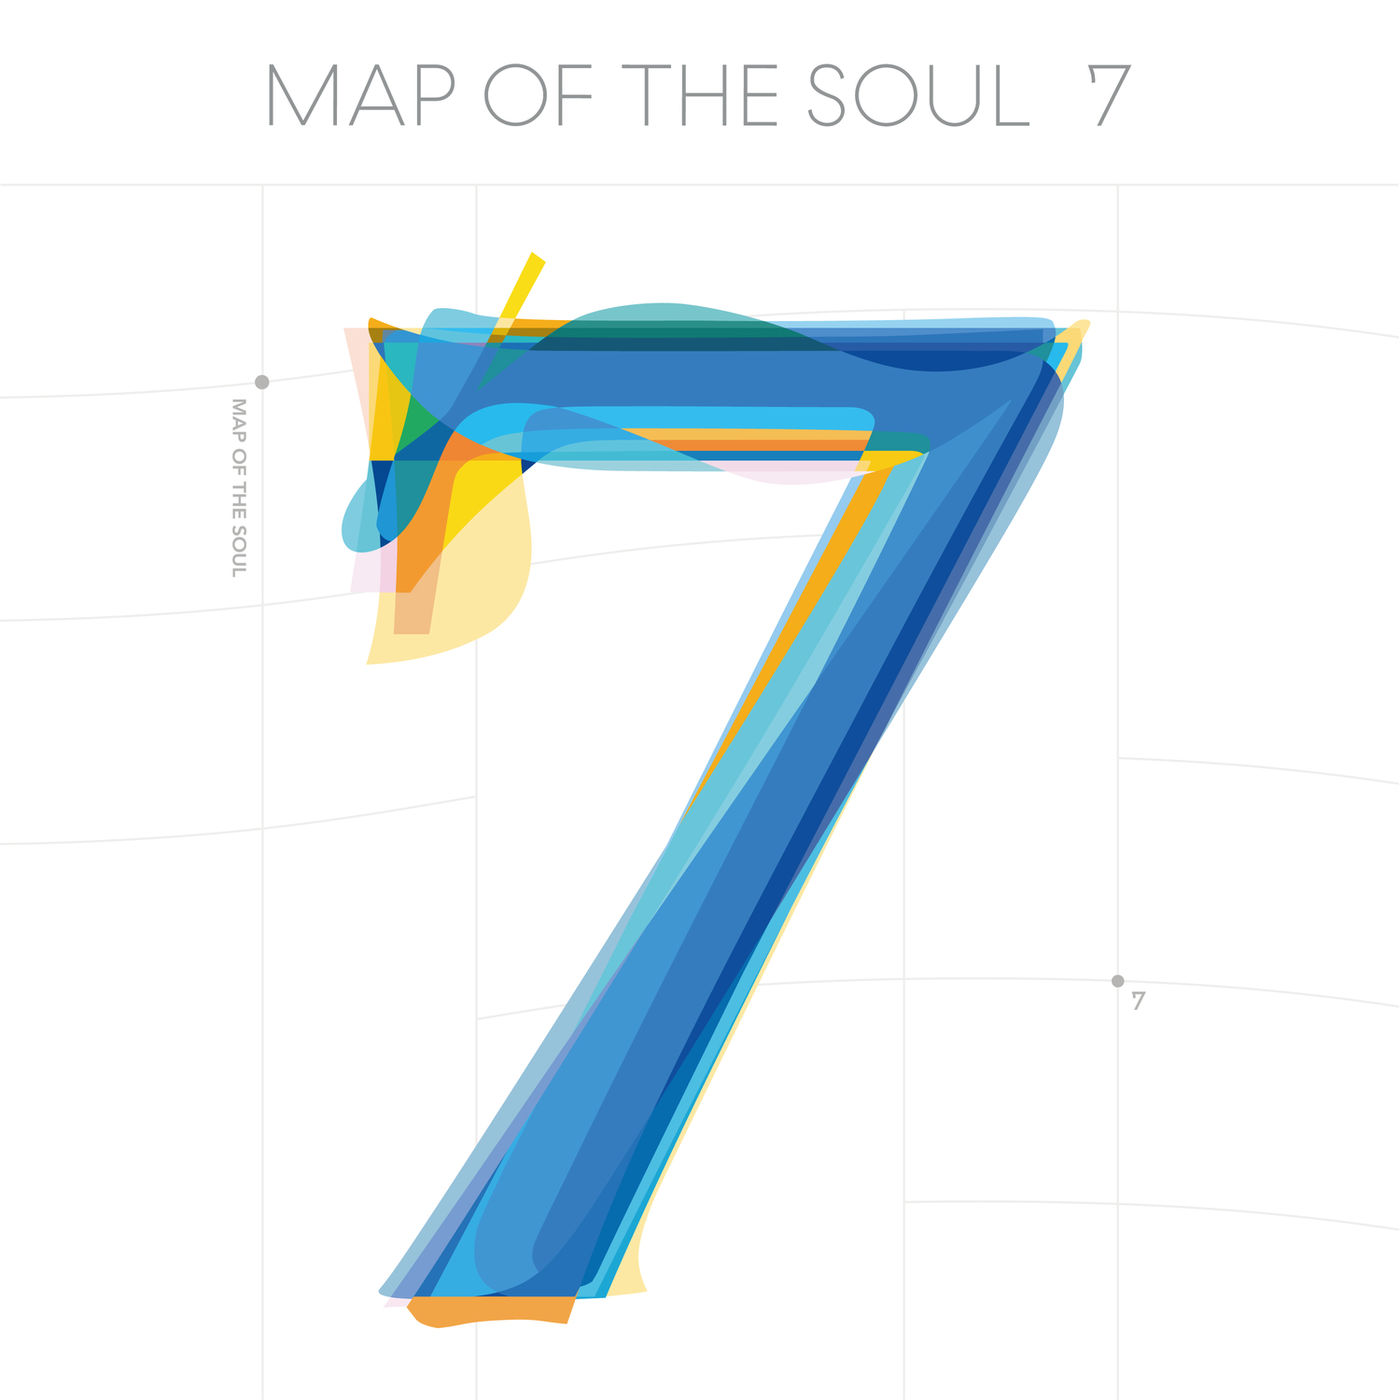 دانلود آلبوم BTS به نام (2020) MAP OF THE SOUL - 7 با کیفیت FLAC 🔥